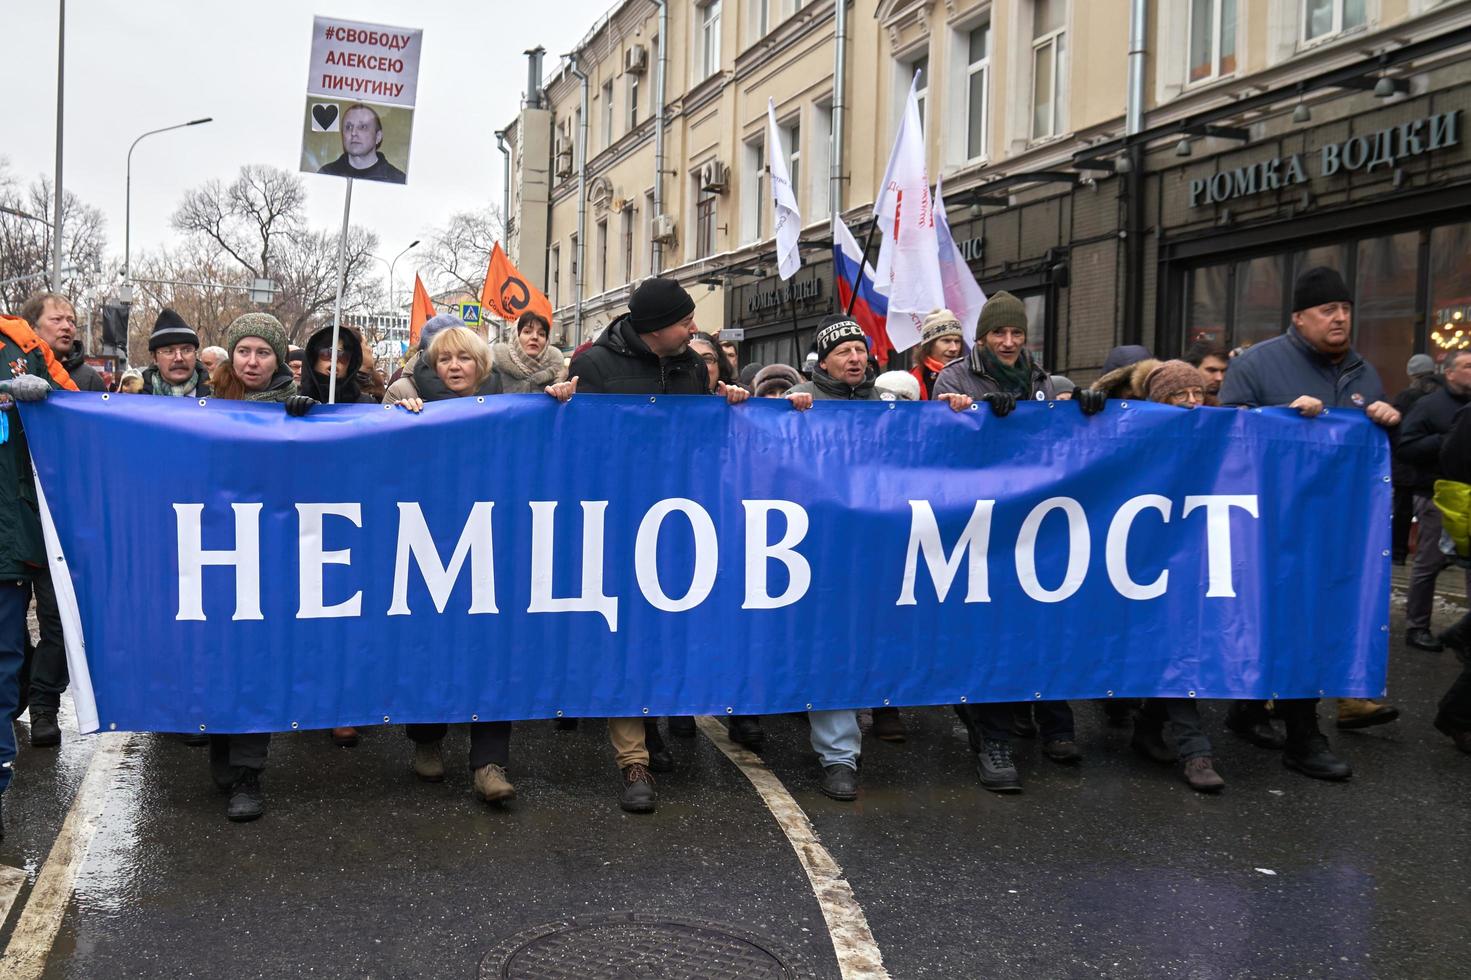 Mosca, Russia - 24 febbraio 2019. marcia commemorativa di nemtsov. manifestanti che trasportano un grande striscione ponte nemtsov - obbligo alle autorità di nominare il suo nome il ponte su cui è stato ucciso foto